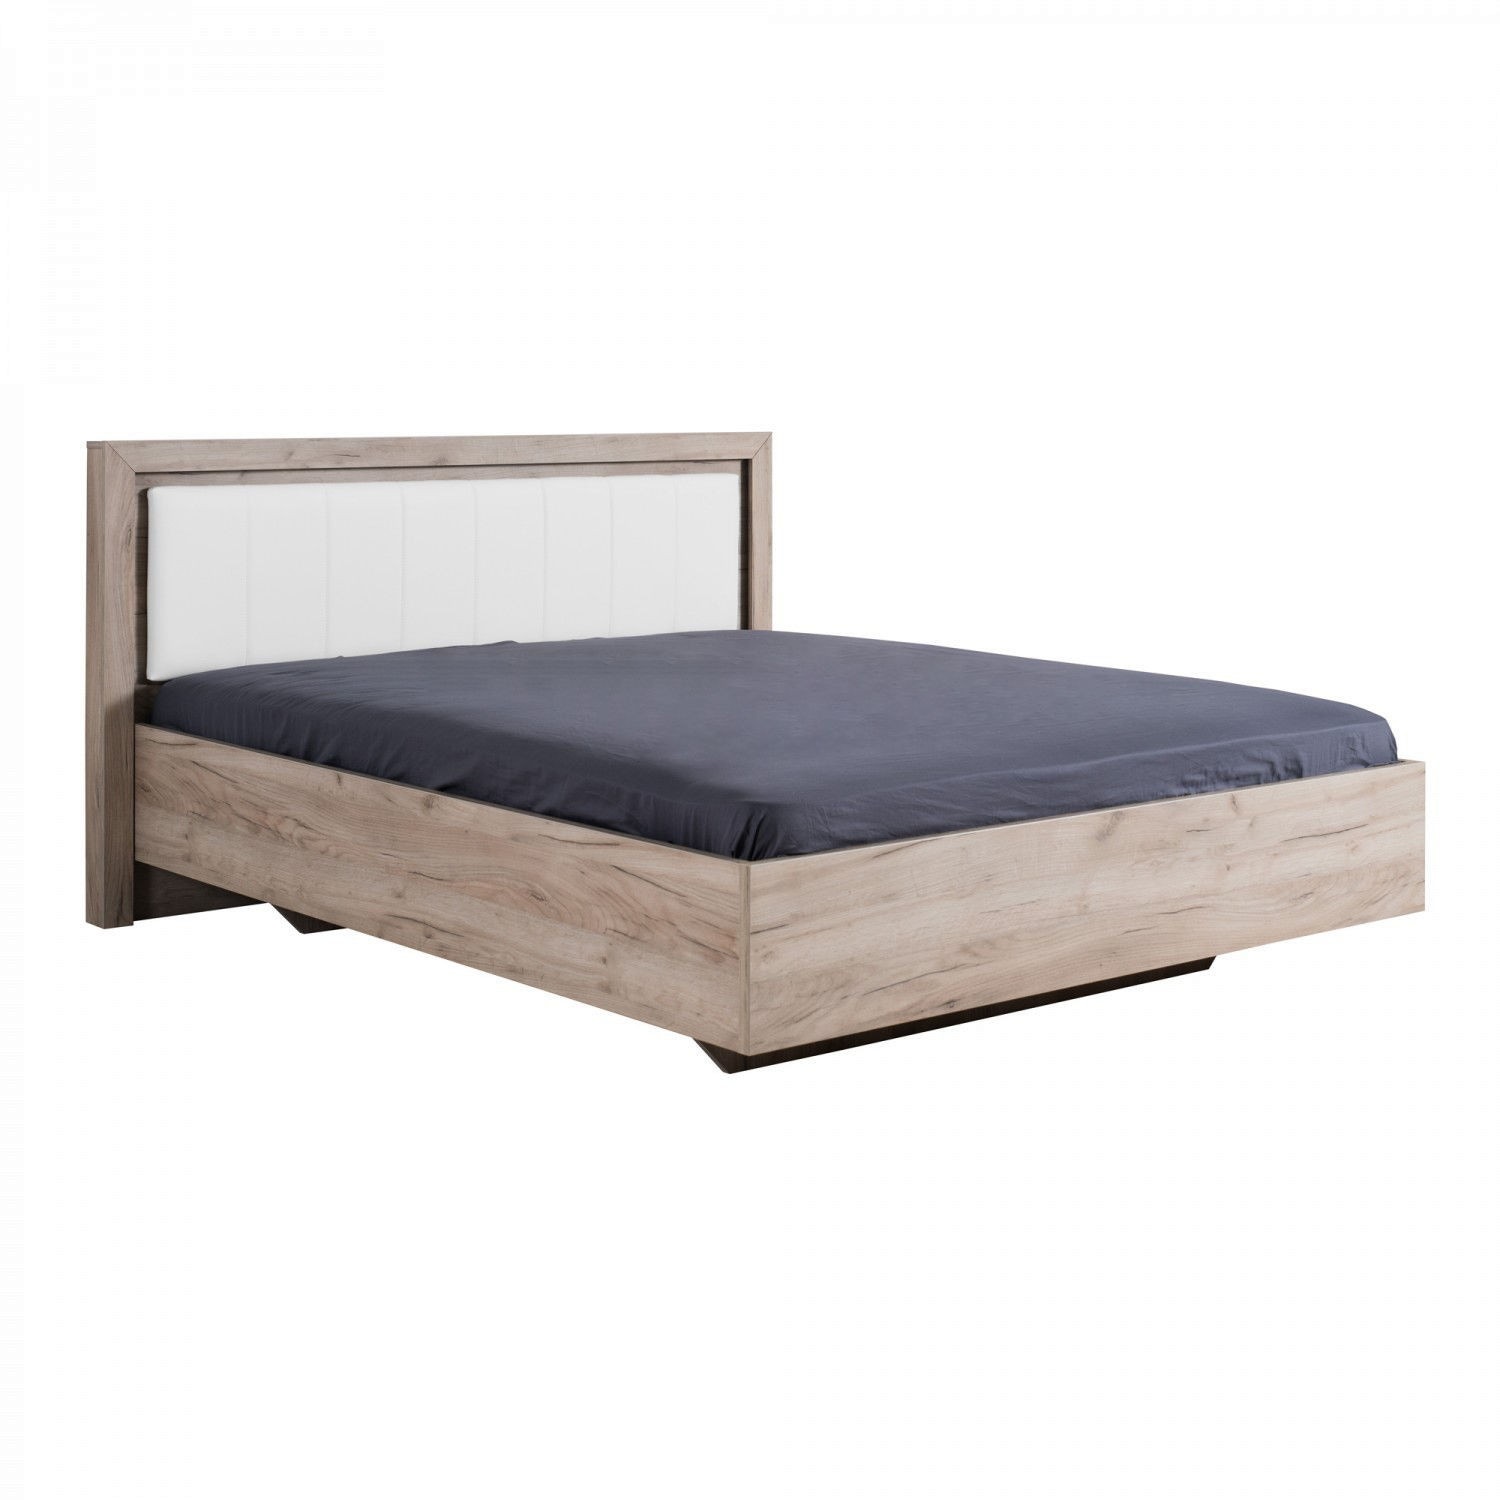 Dormitor complet Sierra C4, stejar gri + alb, 5 piese, 16C